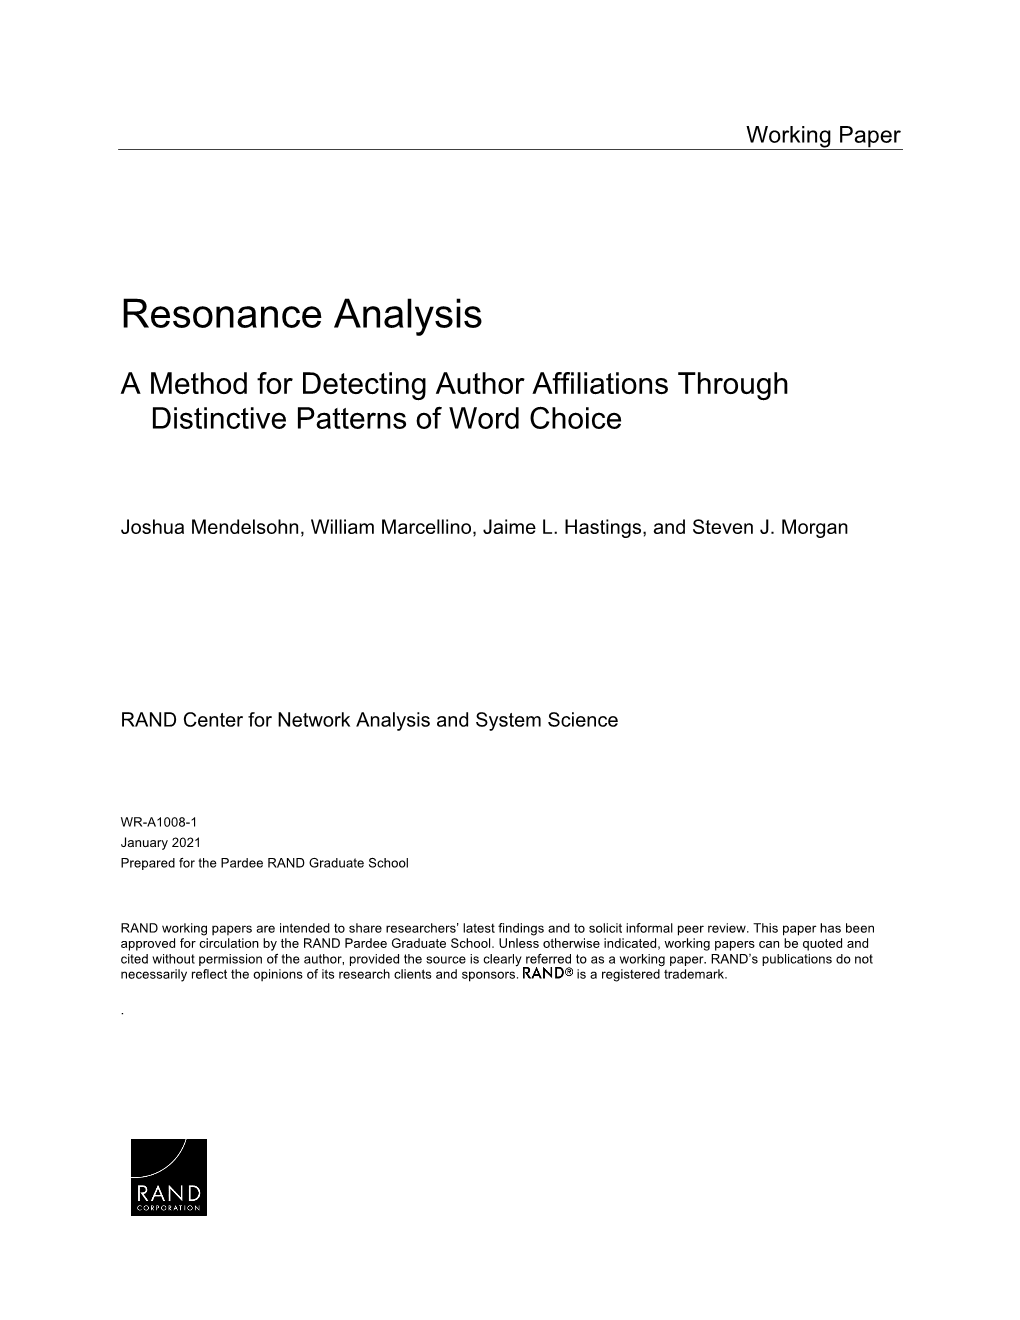 Resonance Analysis